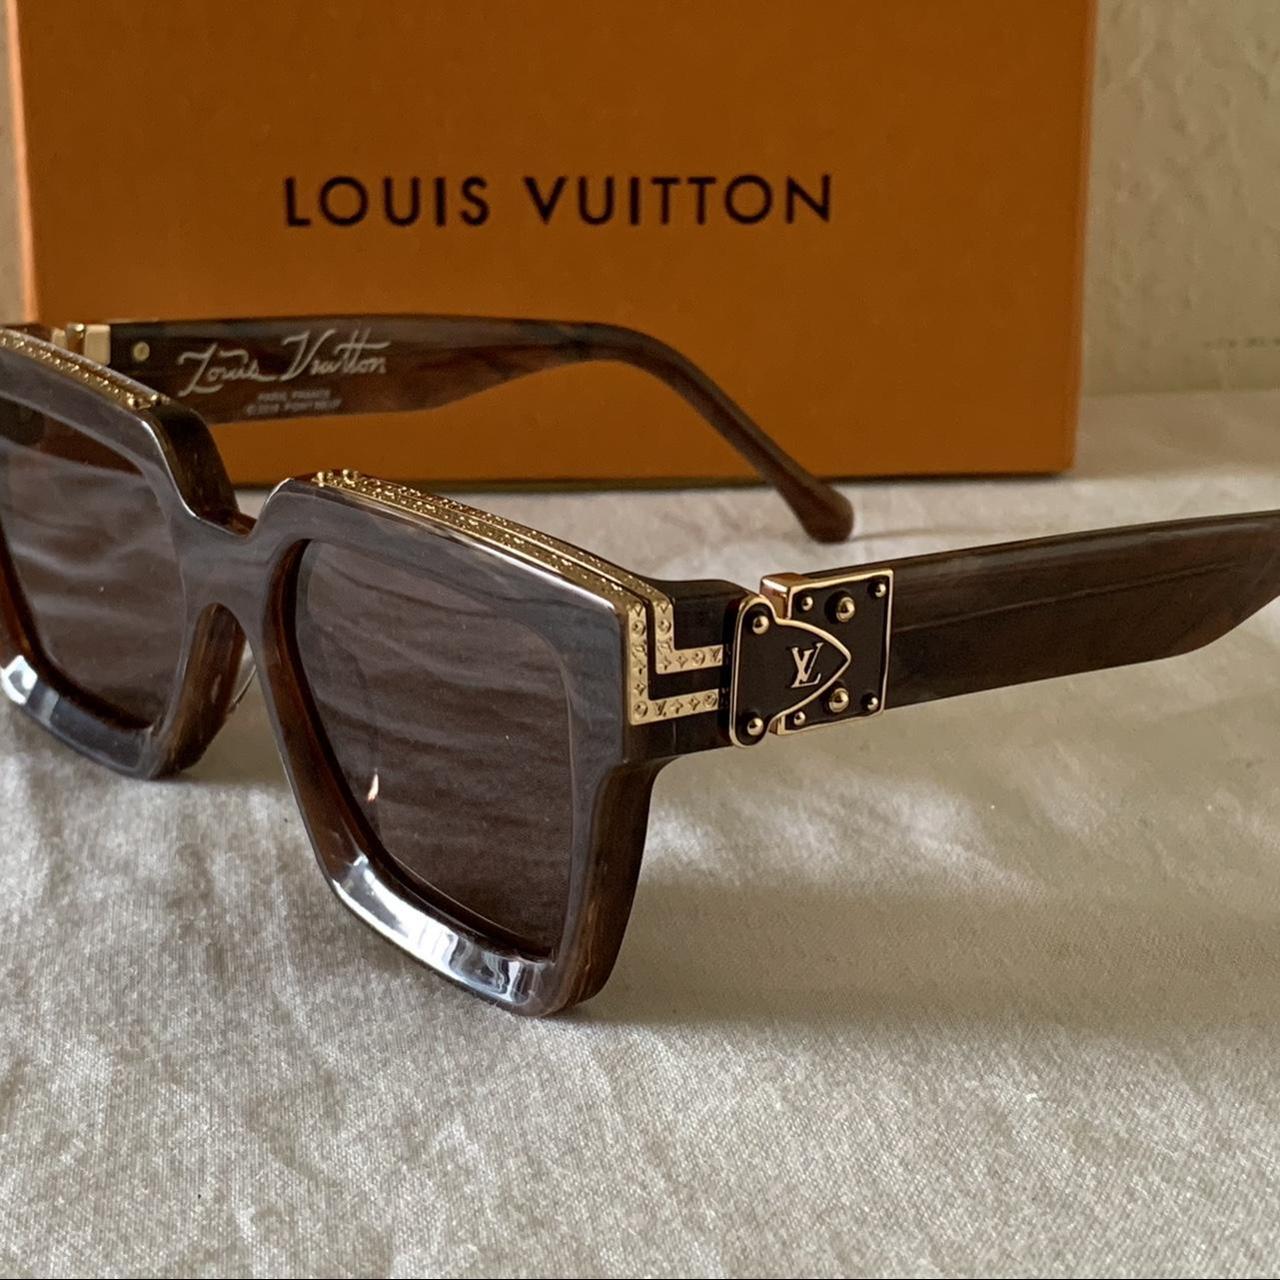 Rare) Louis Vuitton Chrome Millionaires Got these - Depop